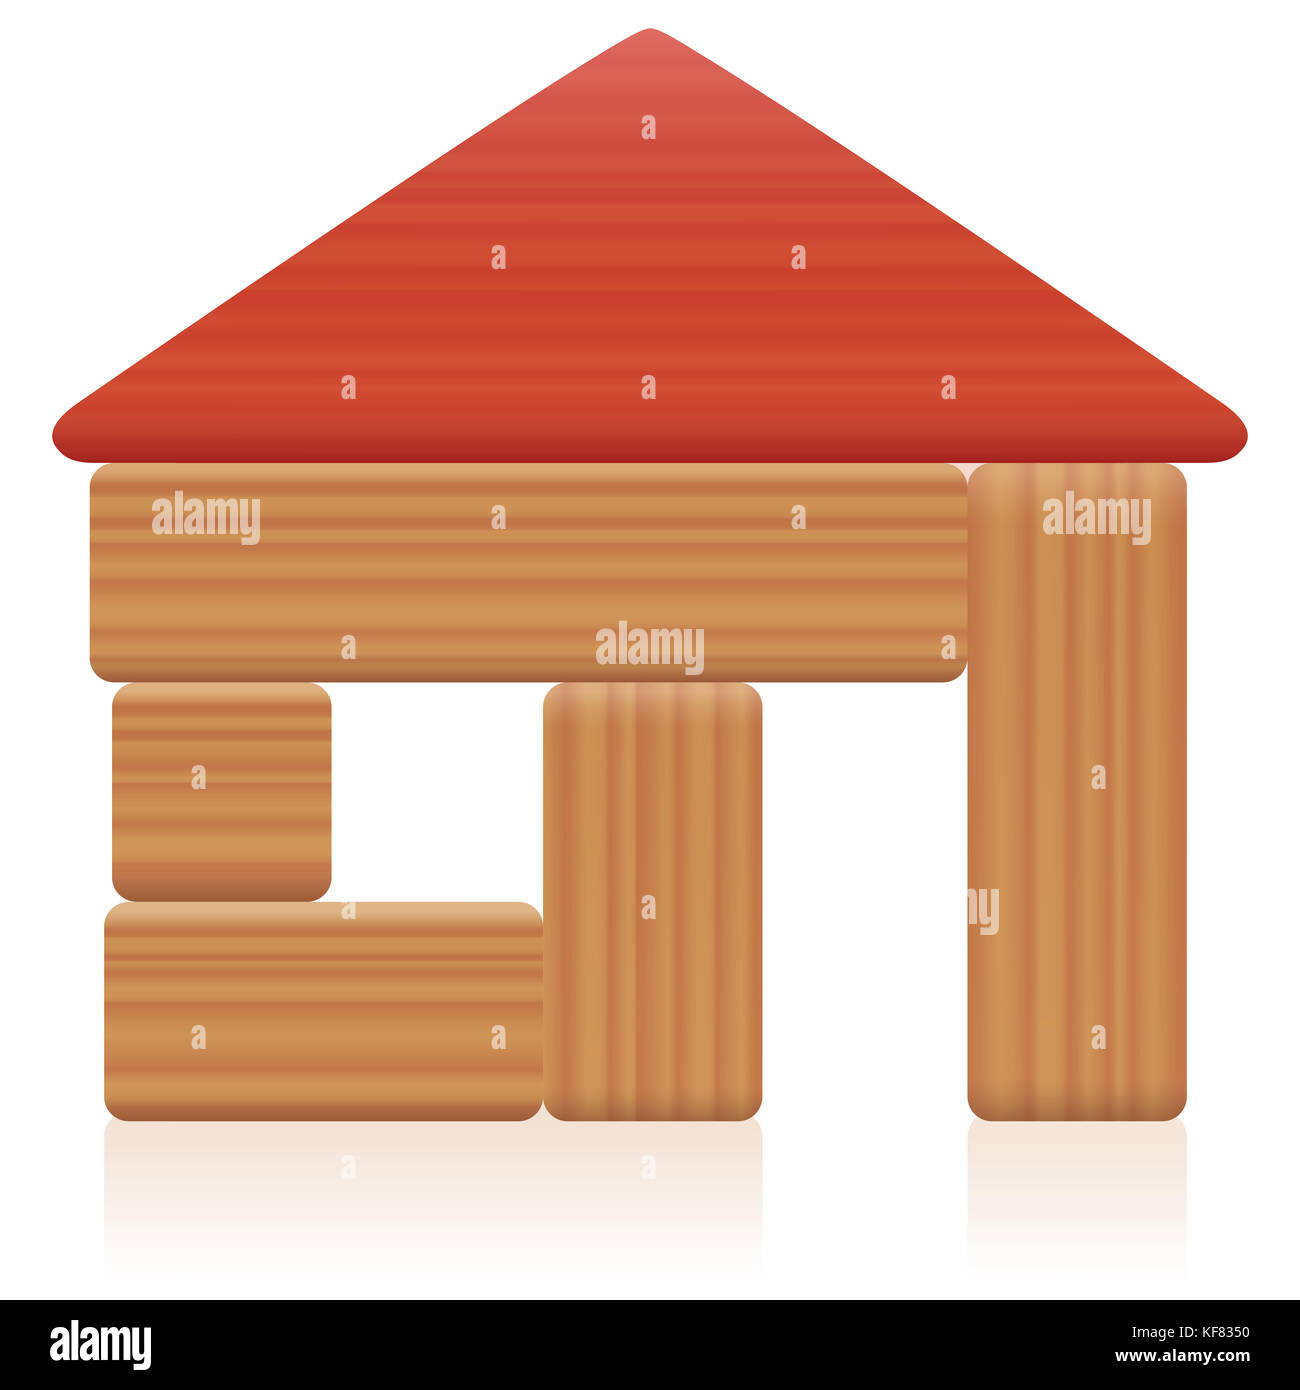 Simple juguete pequeño casa construida con unos bloques de madera y un techo para una familia pequeña - símbolo de simplicidad relativa fácil vivir. Foto de stock